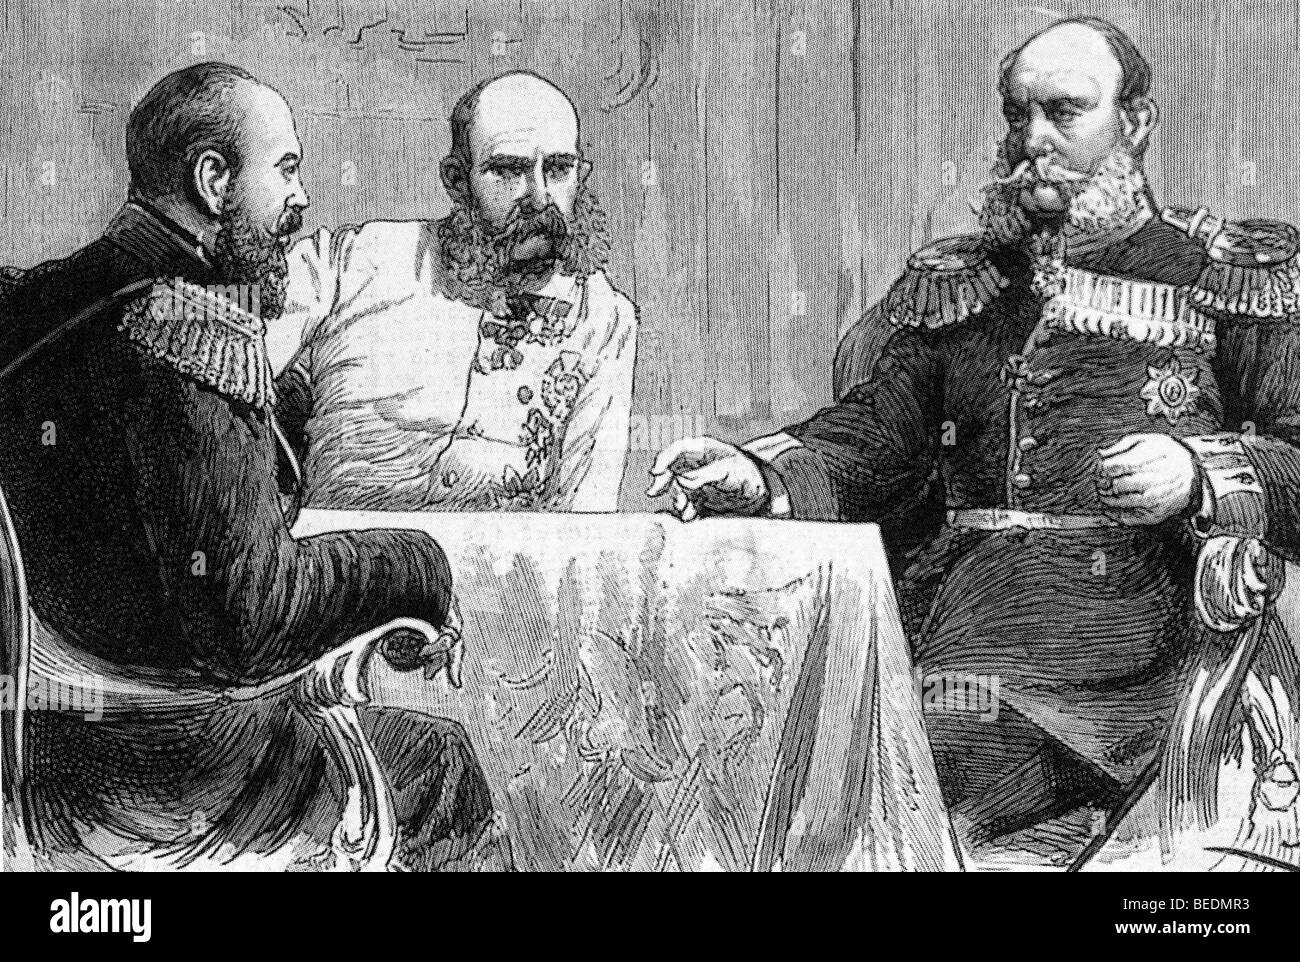 Conférence de Varsovie 1884. De gauche le Tsar Alexandre III de Russie, l'empereur François-Joseph d'Autriche et l'empereur Guillaume I d'Allemagne Banque D'Images